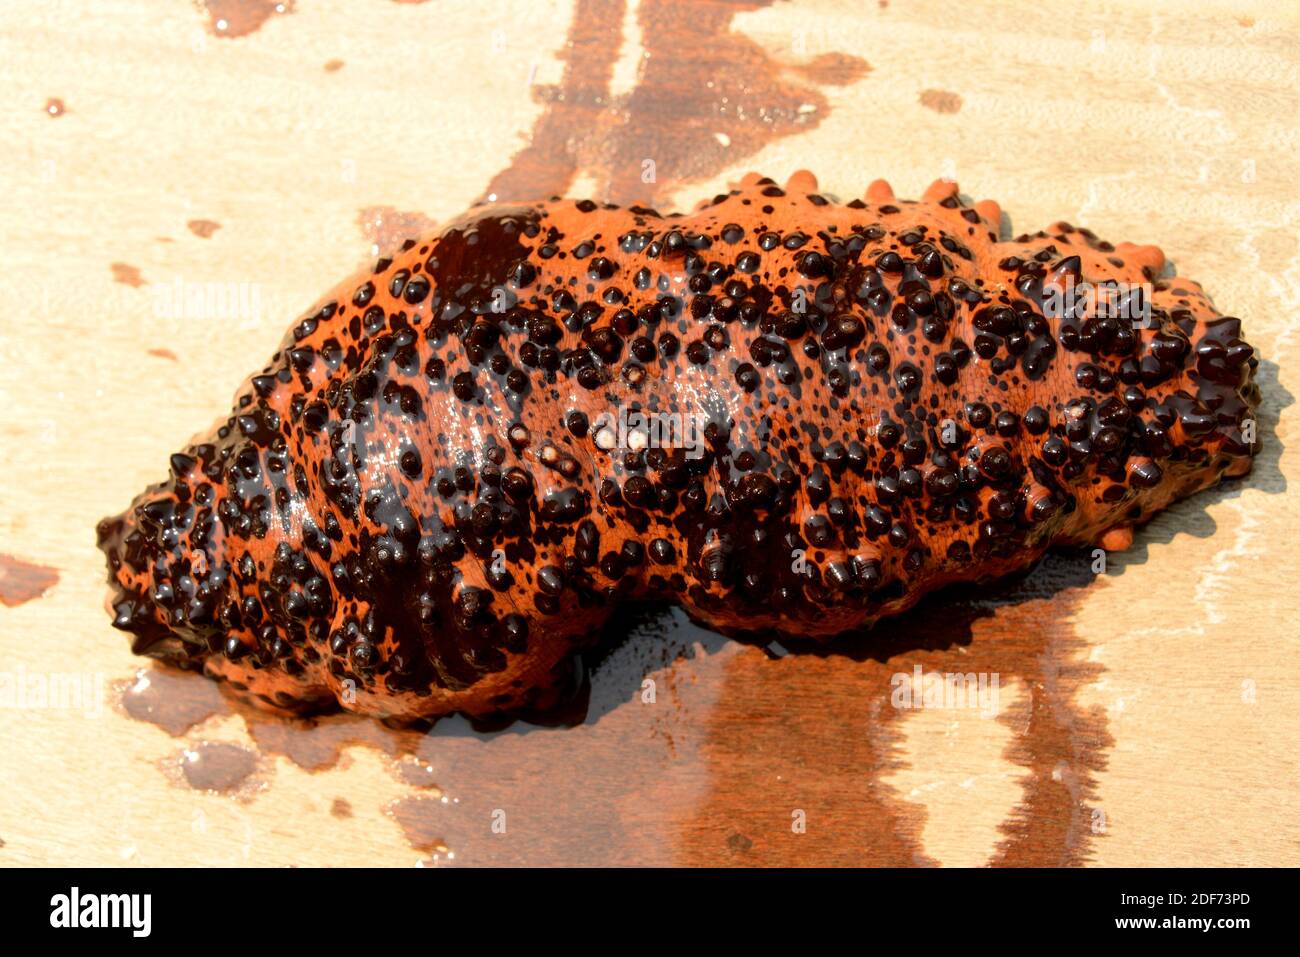 Le concombre aux pépites de chocolat (Isostichopus badionotus) est un concombre de mer originaire des eaux tropicales de l'océan Atlantique. Cette photo a été prise à Paraty Banque D'Images